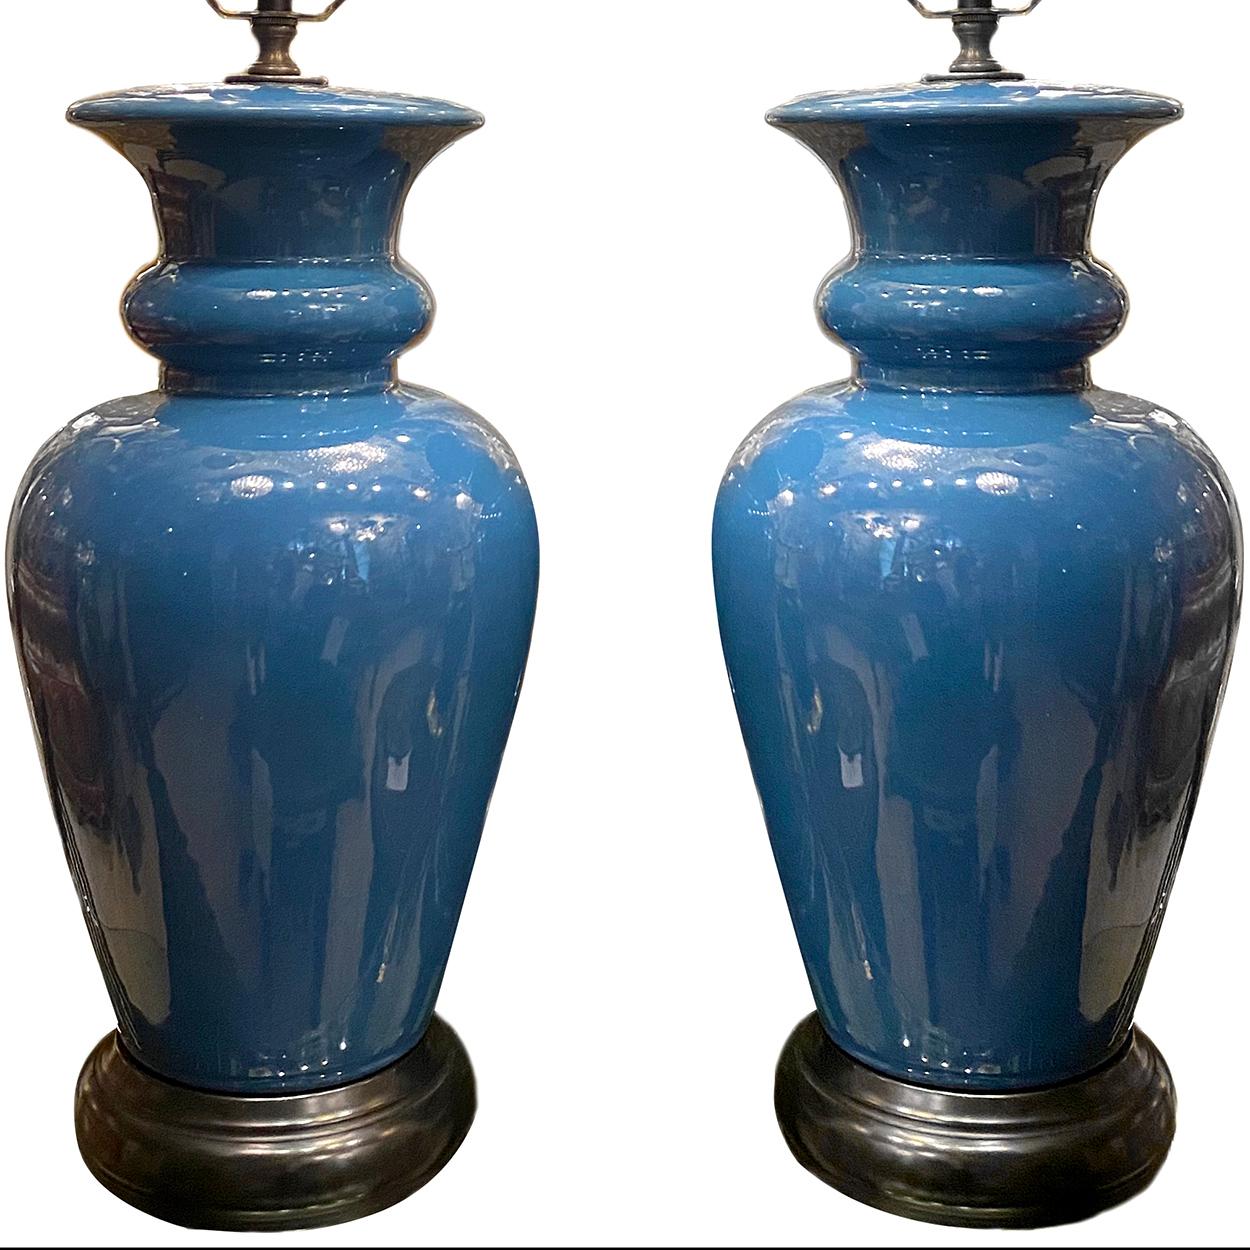 Paire de lampes de table en porcelaine française des années 1960.

Mesures :
Hauteur du corps : 17